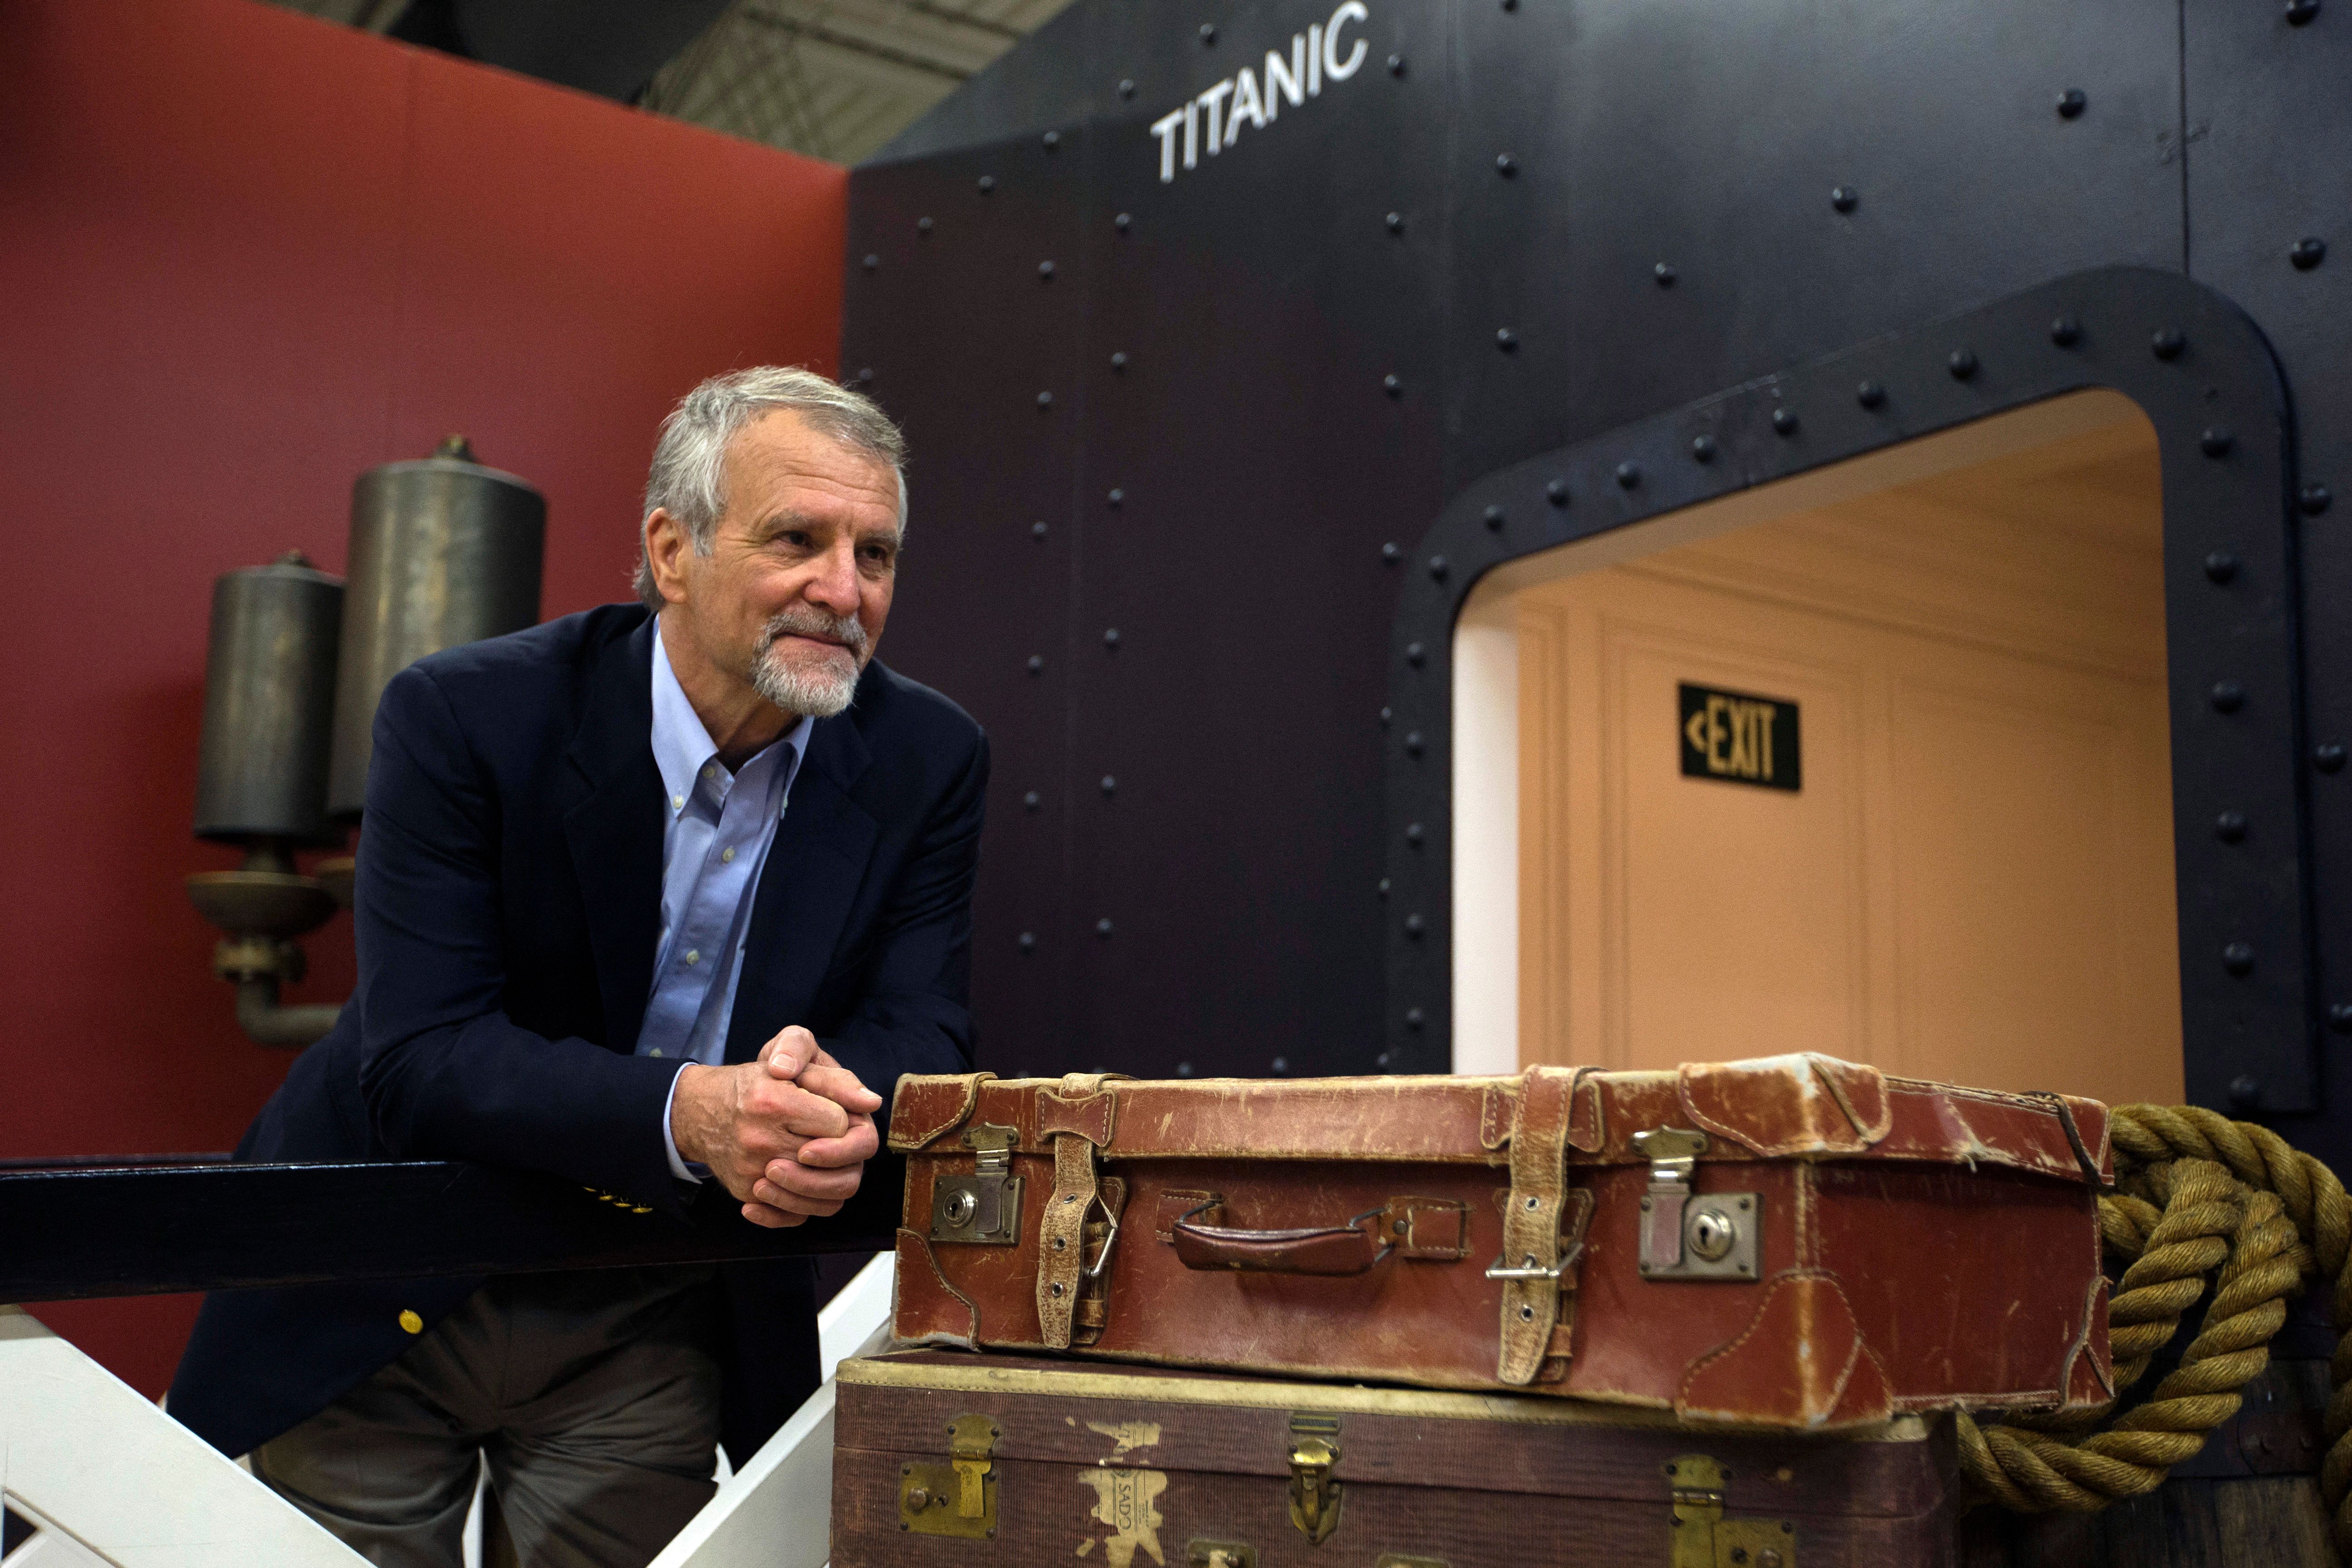 Paul-Henri Nargeolet posa en la exposición Titanic en París en 2013 | Foto: Getty Images